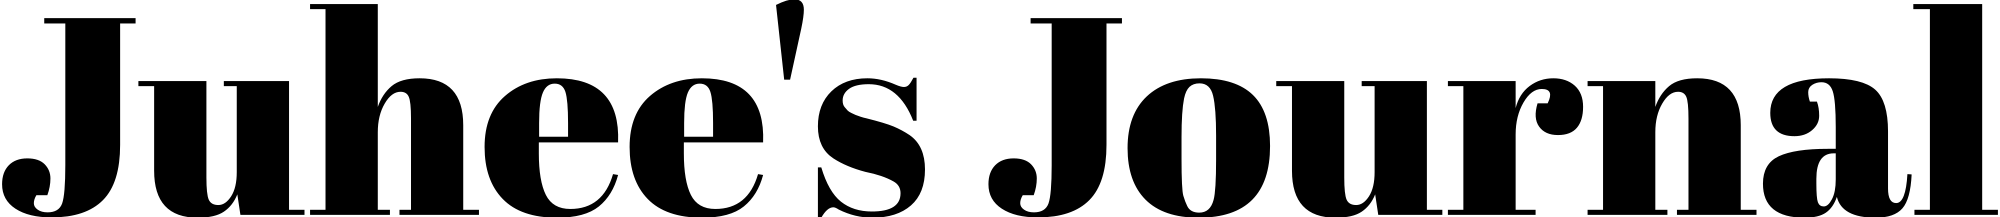 Juhee’s Journal ロゴ